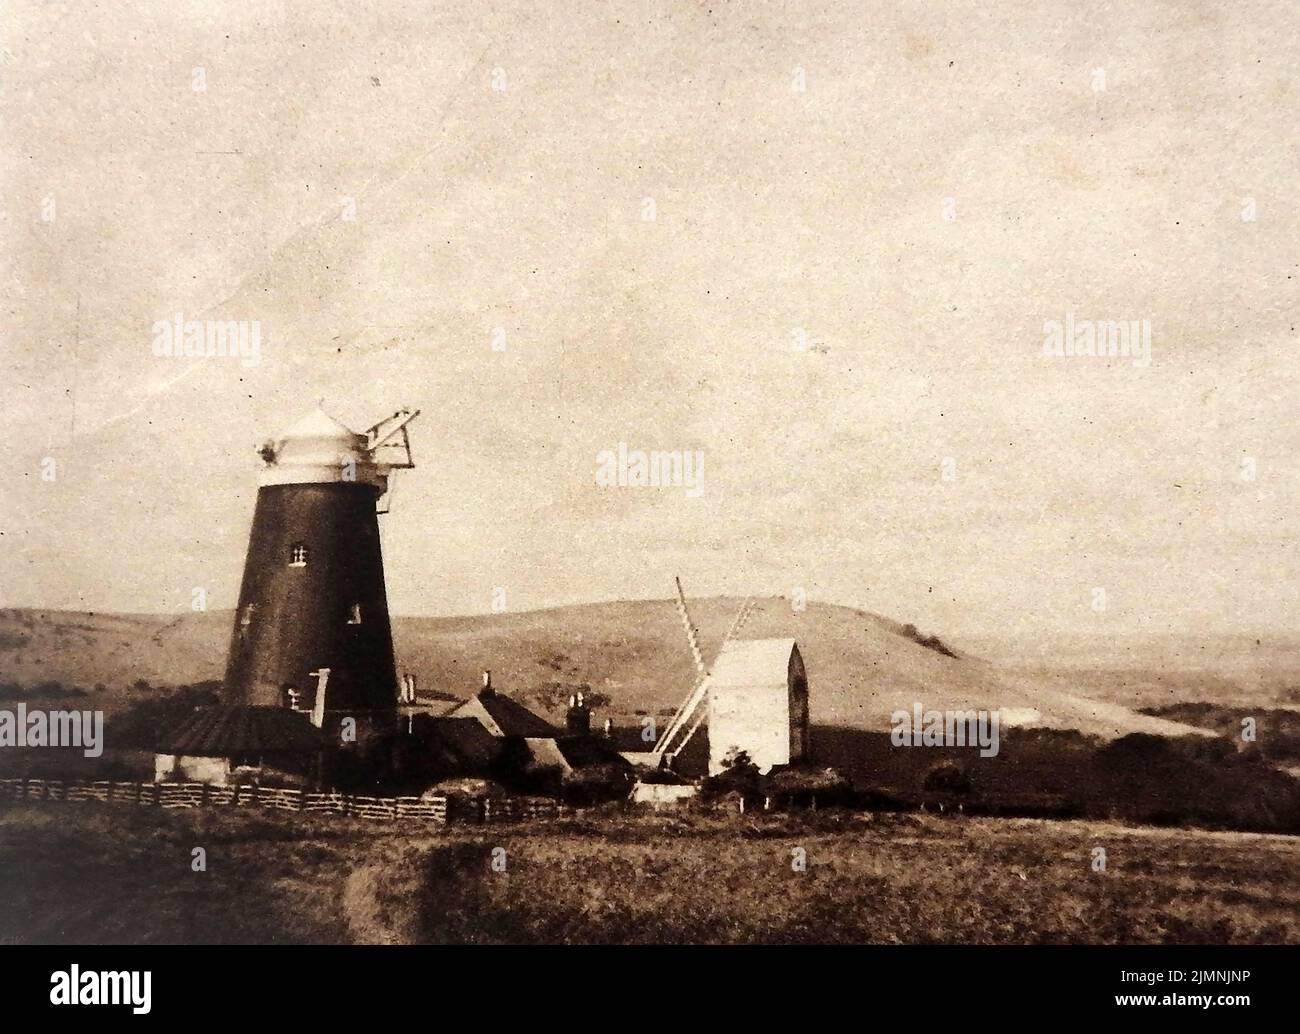 Una fotografía antigua que muestra dos tipos de molinos de viento británicos Foto de stock